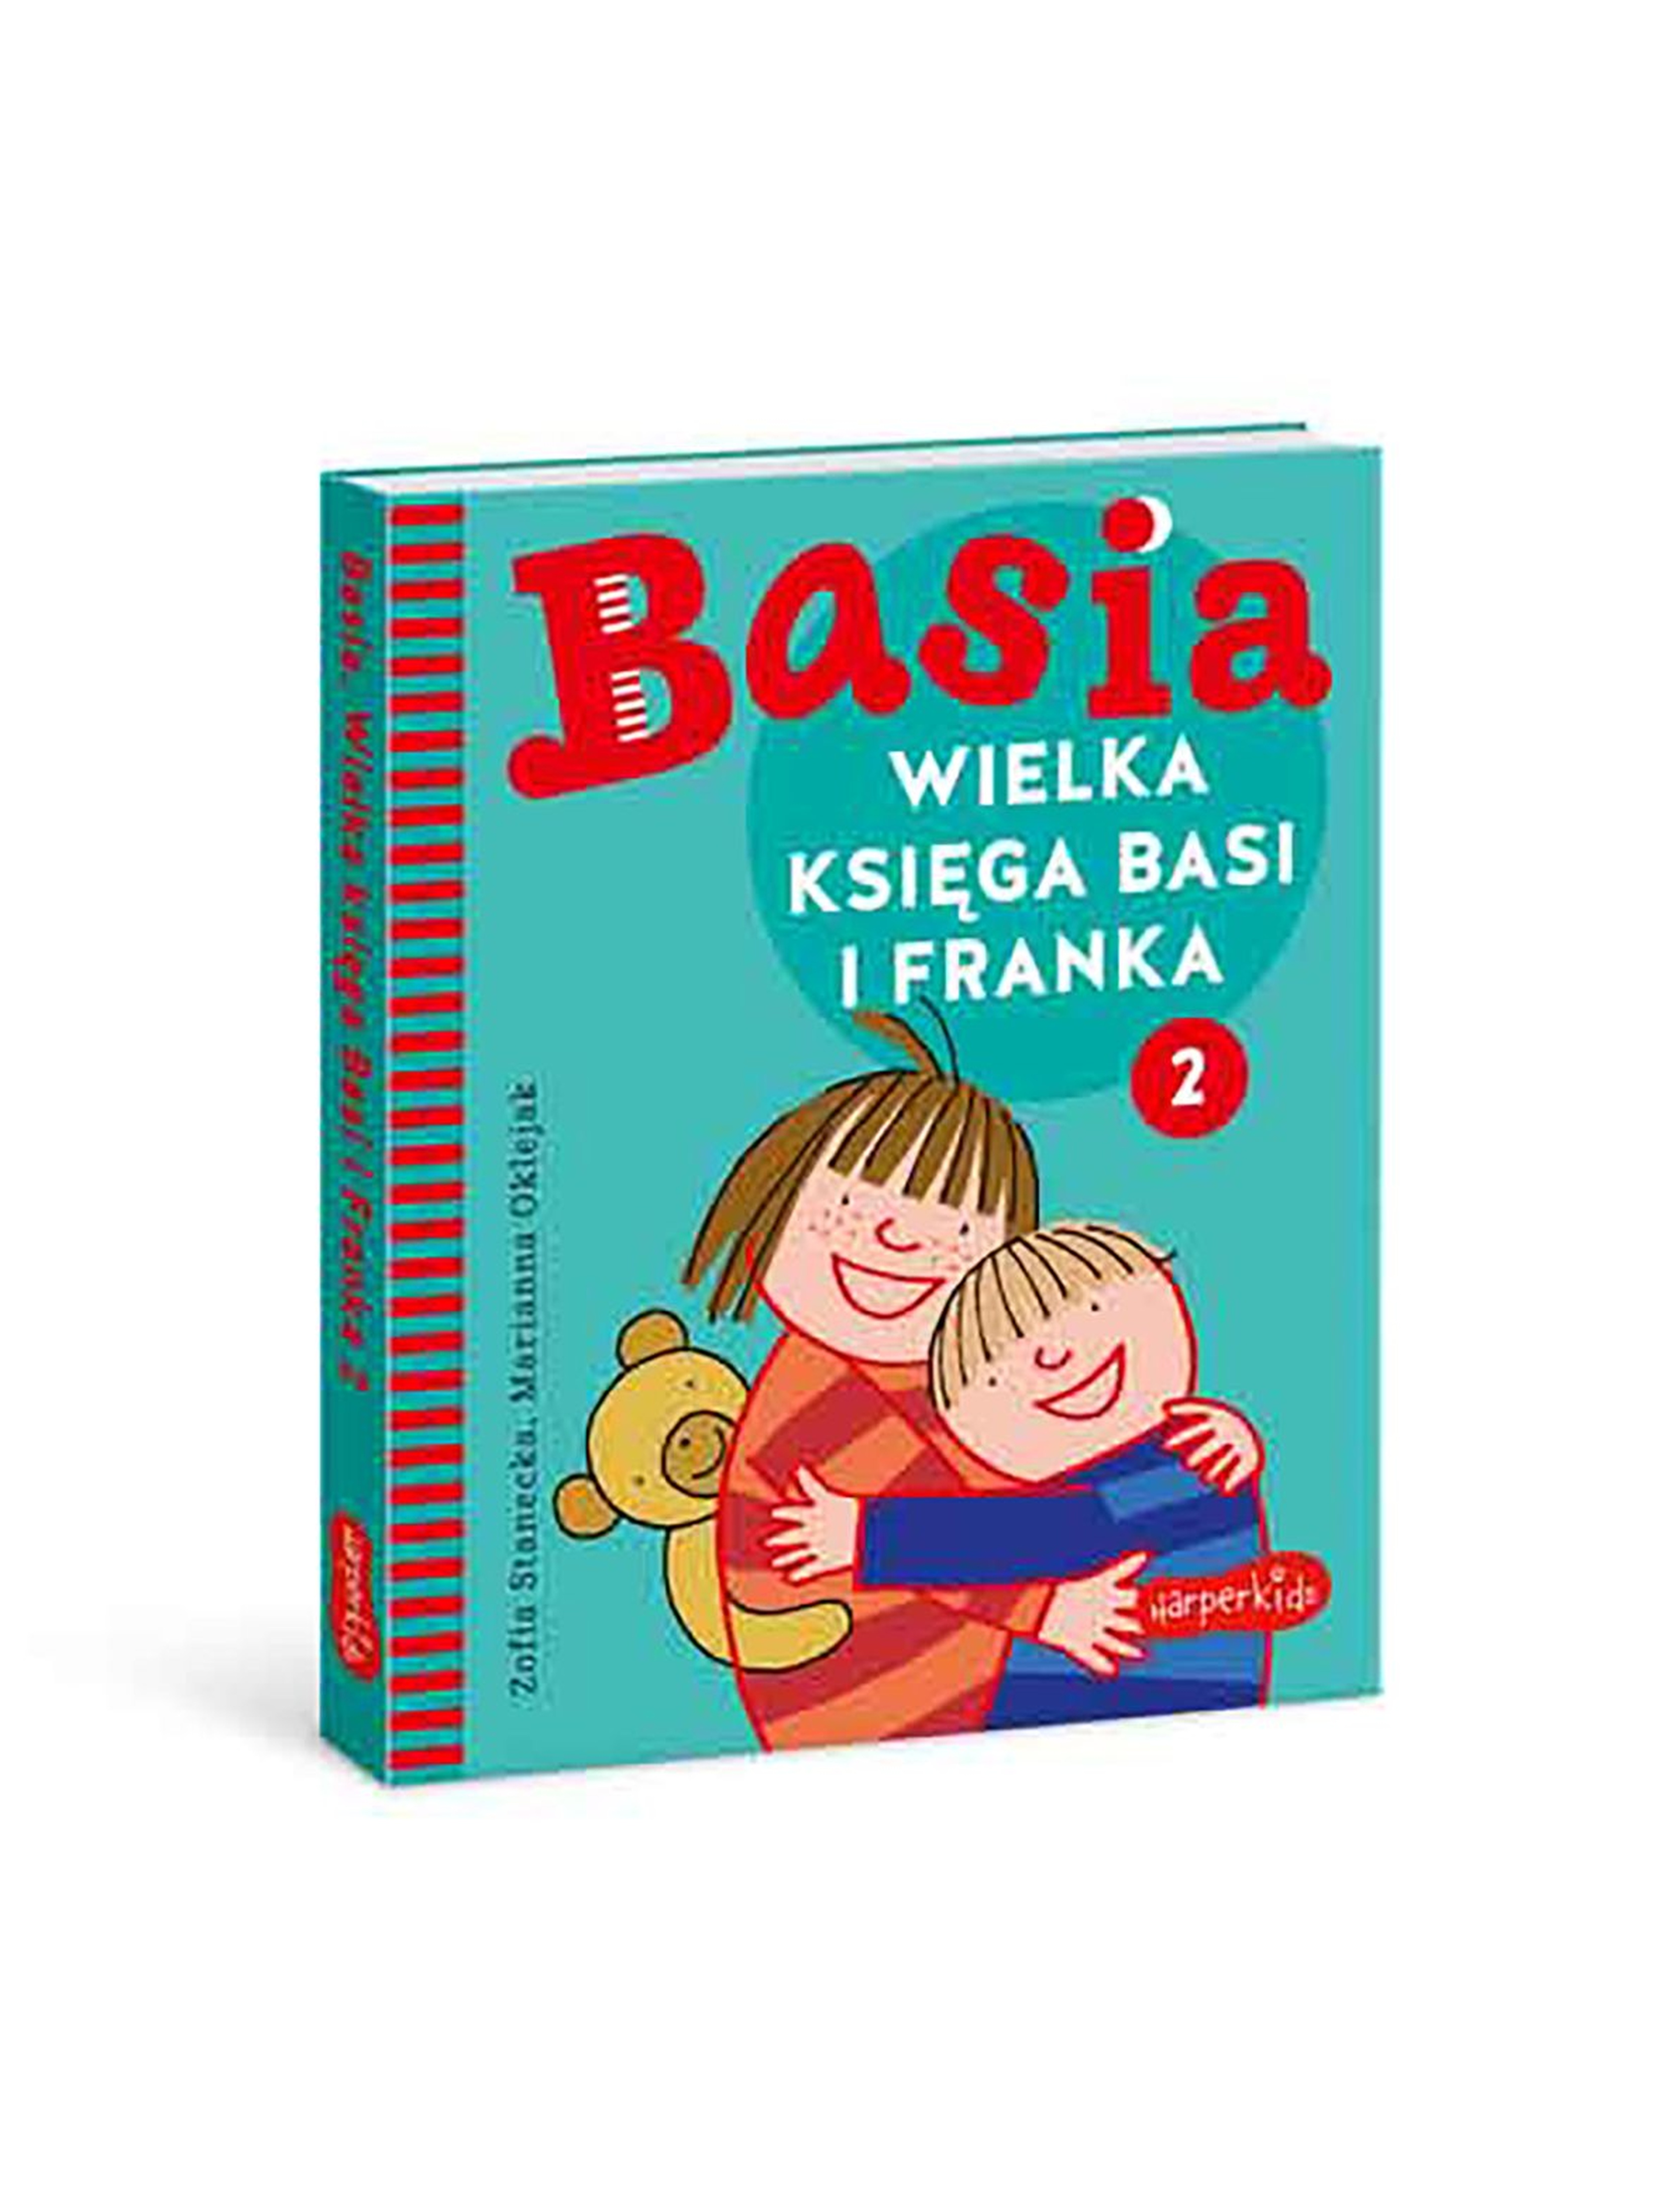 Wielka Księga Basi I Franka 2 - książka dla dzieci-